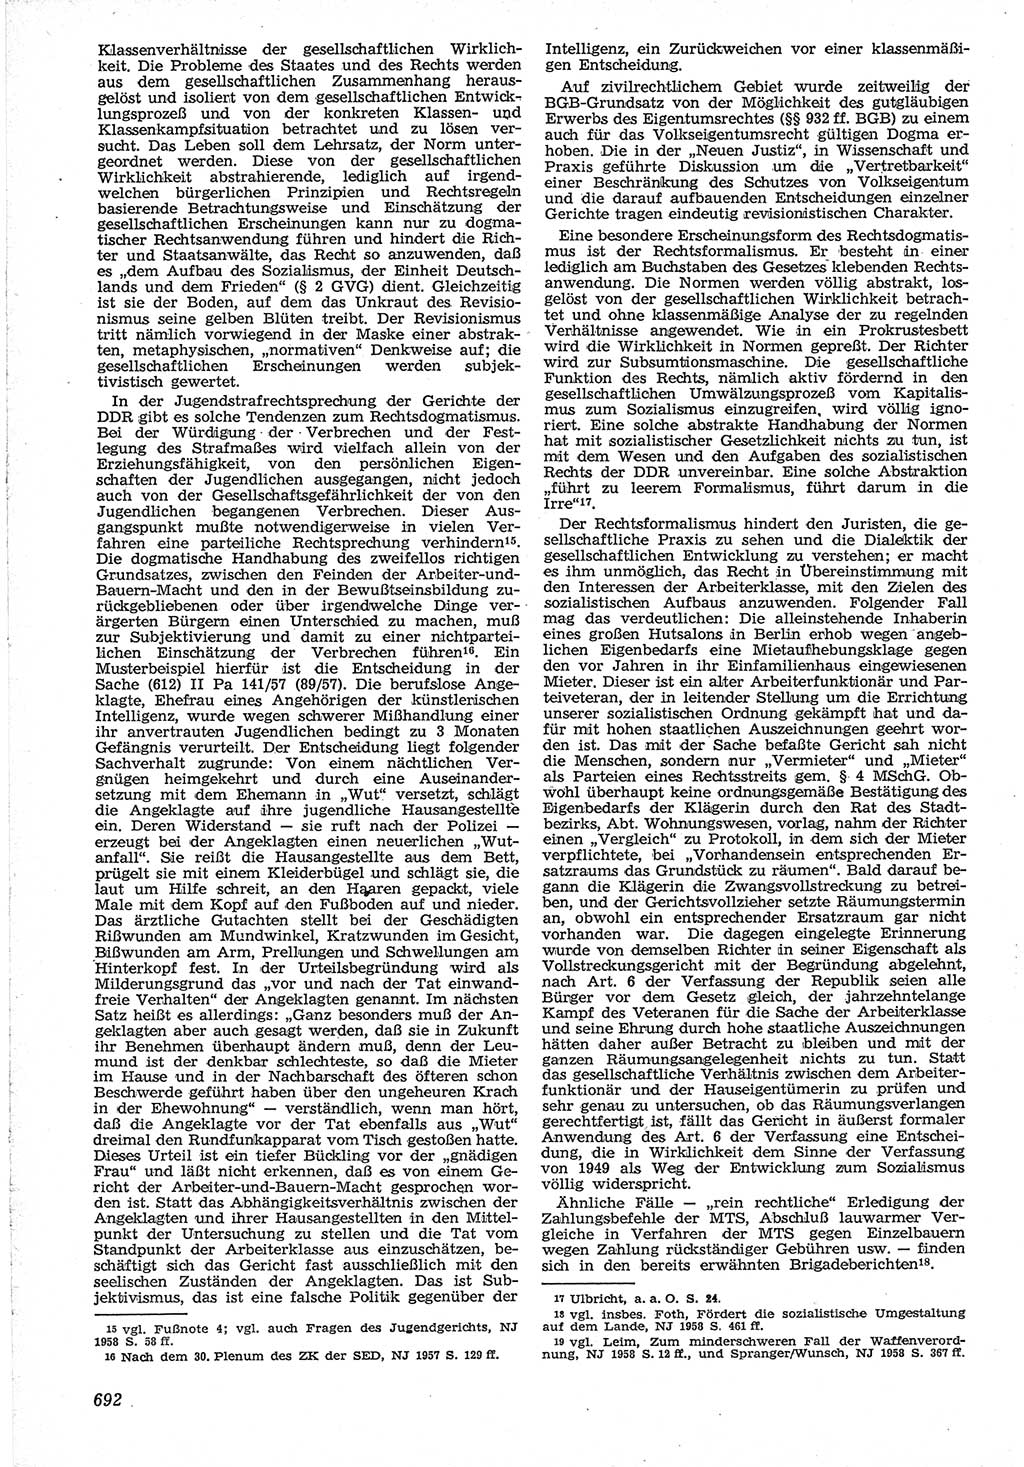 Neue Justiz (NJ), Zeitschrift für Recht und Rechtswissenschaft [Deutsche Demokratische Republik (DDR)], 12. Jahrgang 1958, Seite 692 (NJ DDR 1958, S. 692)